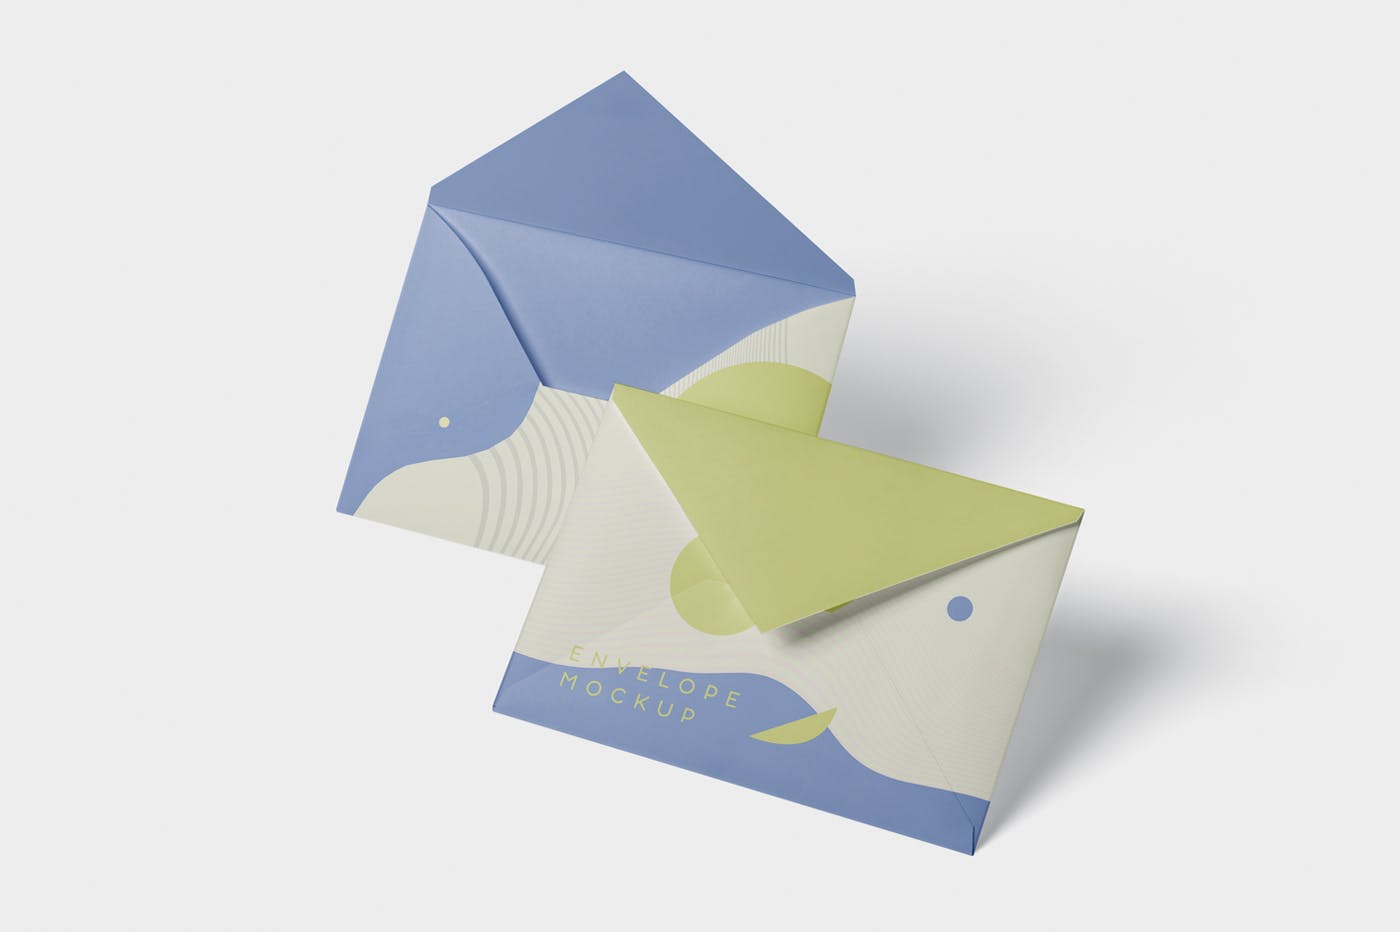 高端企业信封外观设计图蚂蚁素材精选模板 Envelope C5 – C6 Mock-Up Set插图(3)